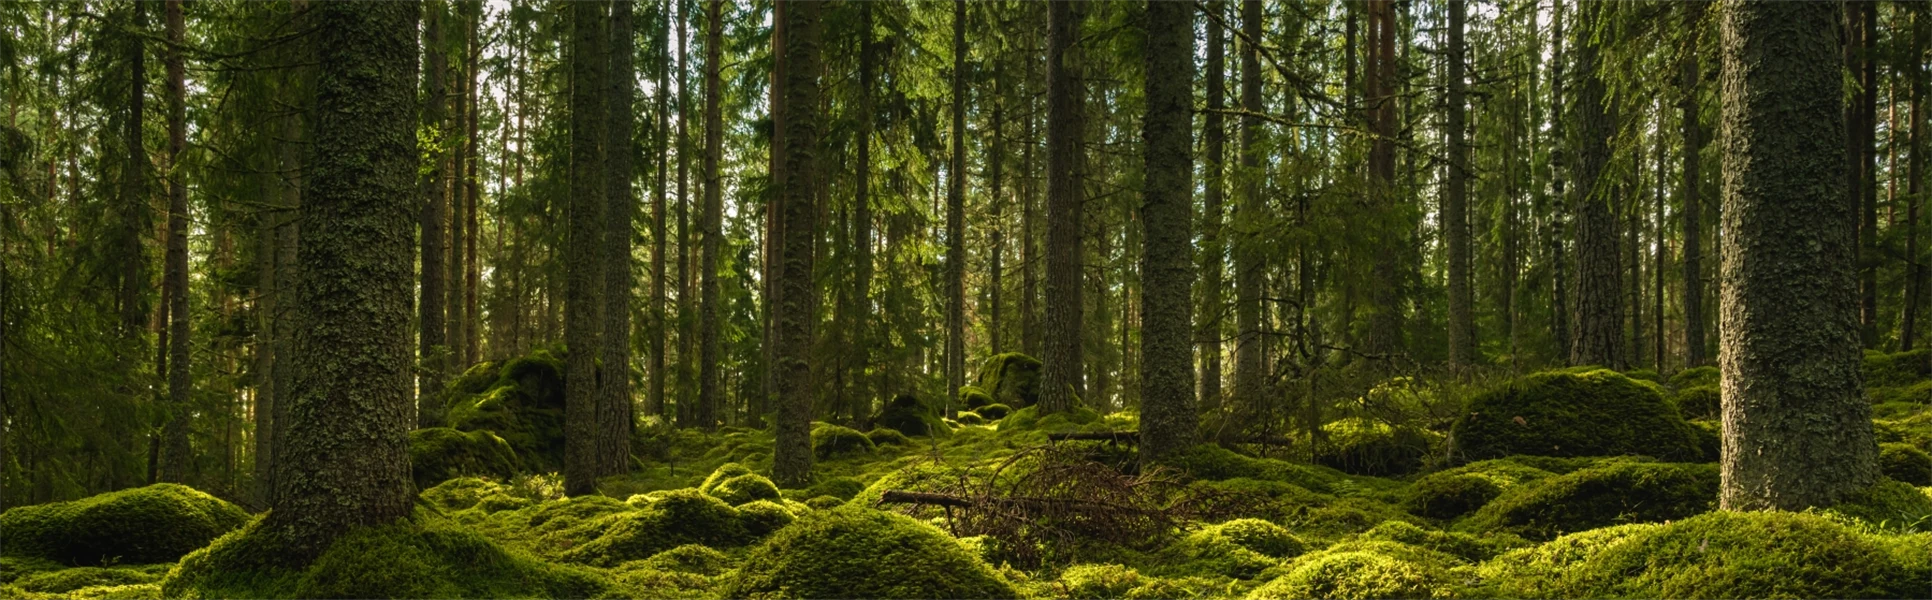 Vacker utsikt över en alvisk gran- och tallskog i Sverige, med ett tjockt lager av grön mossa som täcker stenar på skogsbotten och lite solljus som skiner genom grenarna